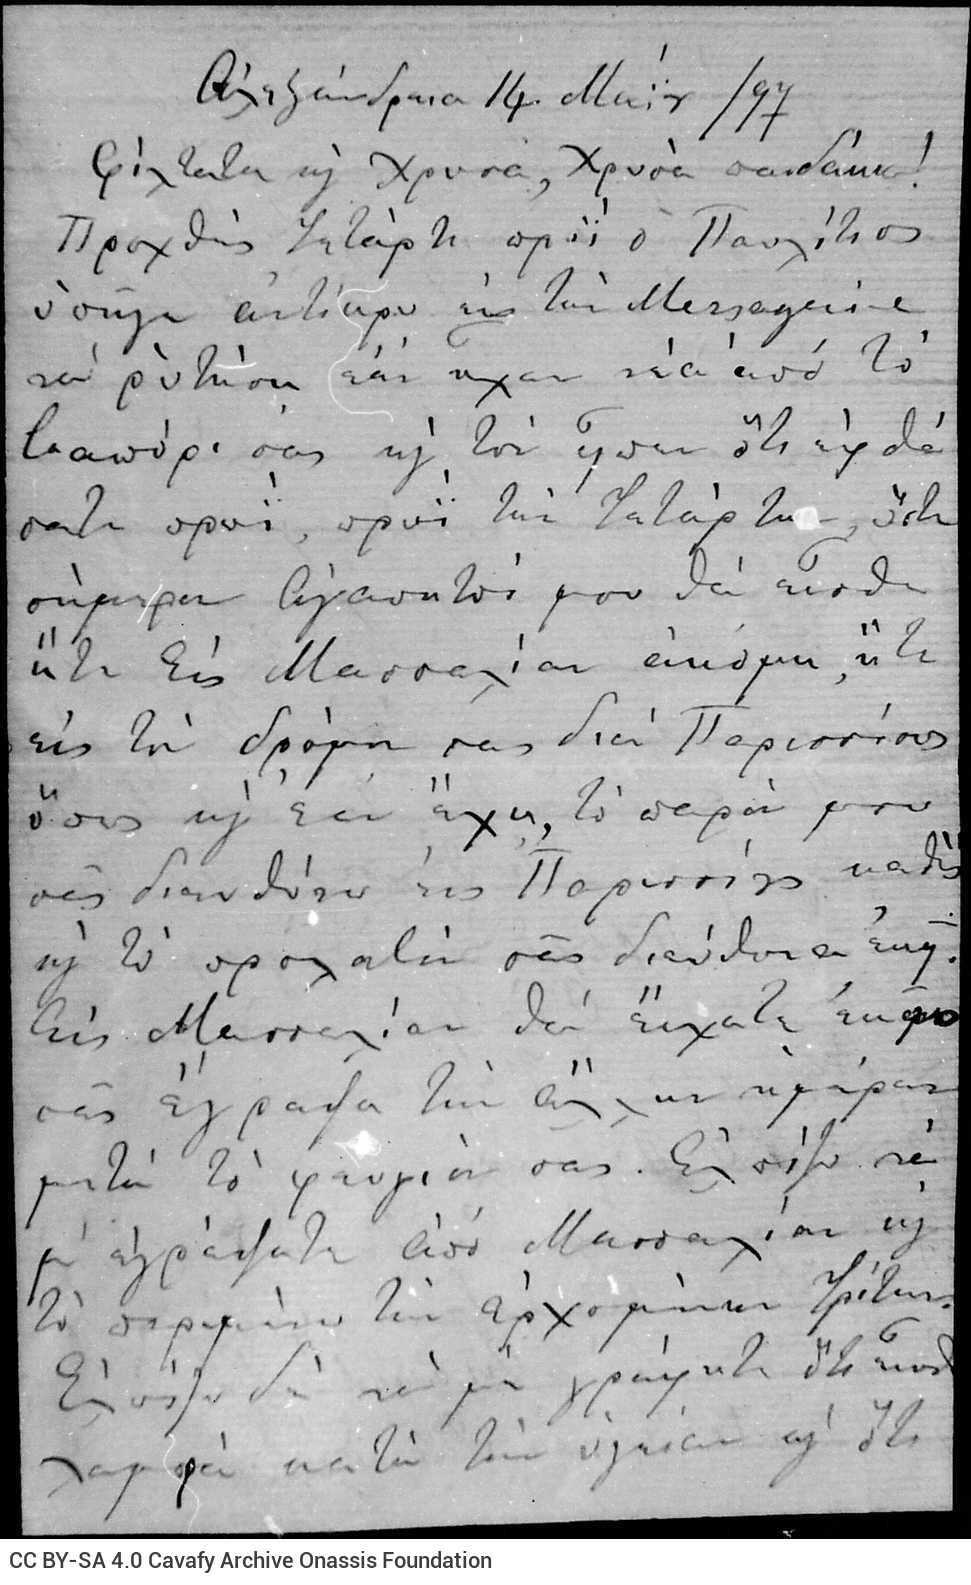 Χειρόγραφη επιστολή της Χαρίκλειας Καβάφη προς τους γιους της Τζω�